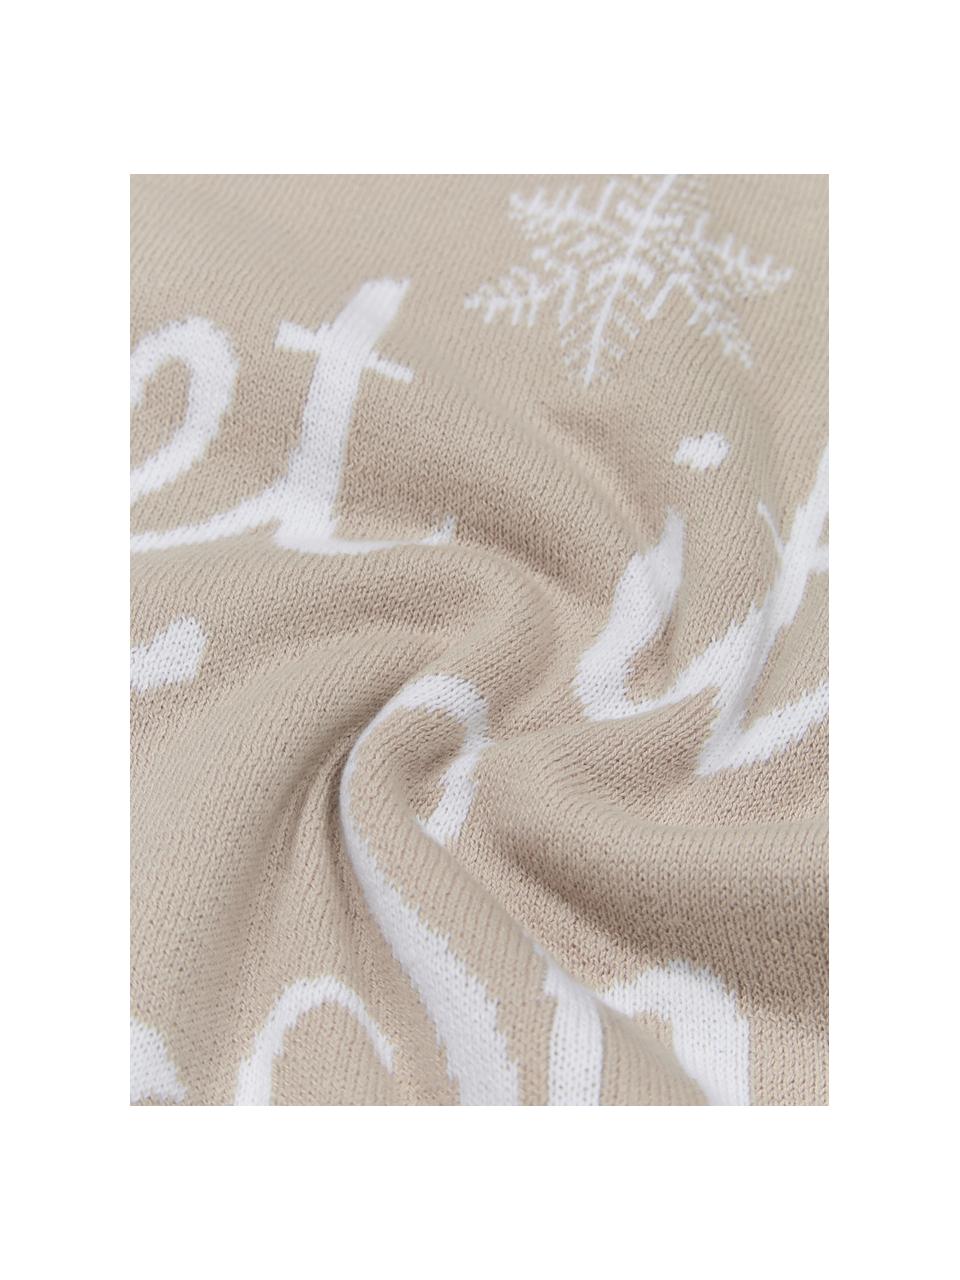 Copricuscino Let It Snow, 100% cotone pettinato, Beige, bianco, Larg. 40 x Lung. 40 cm